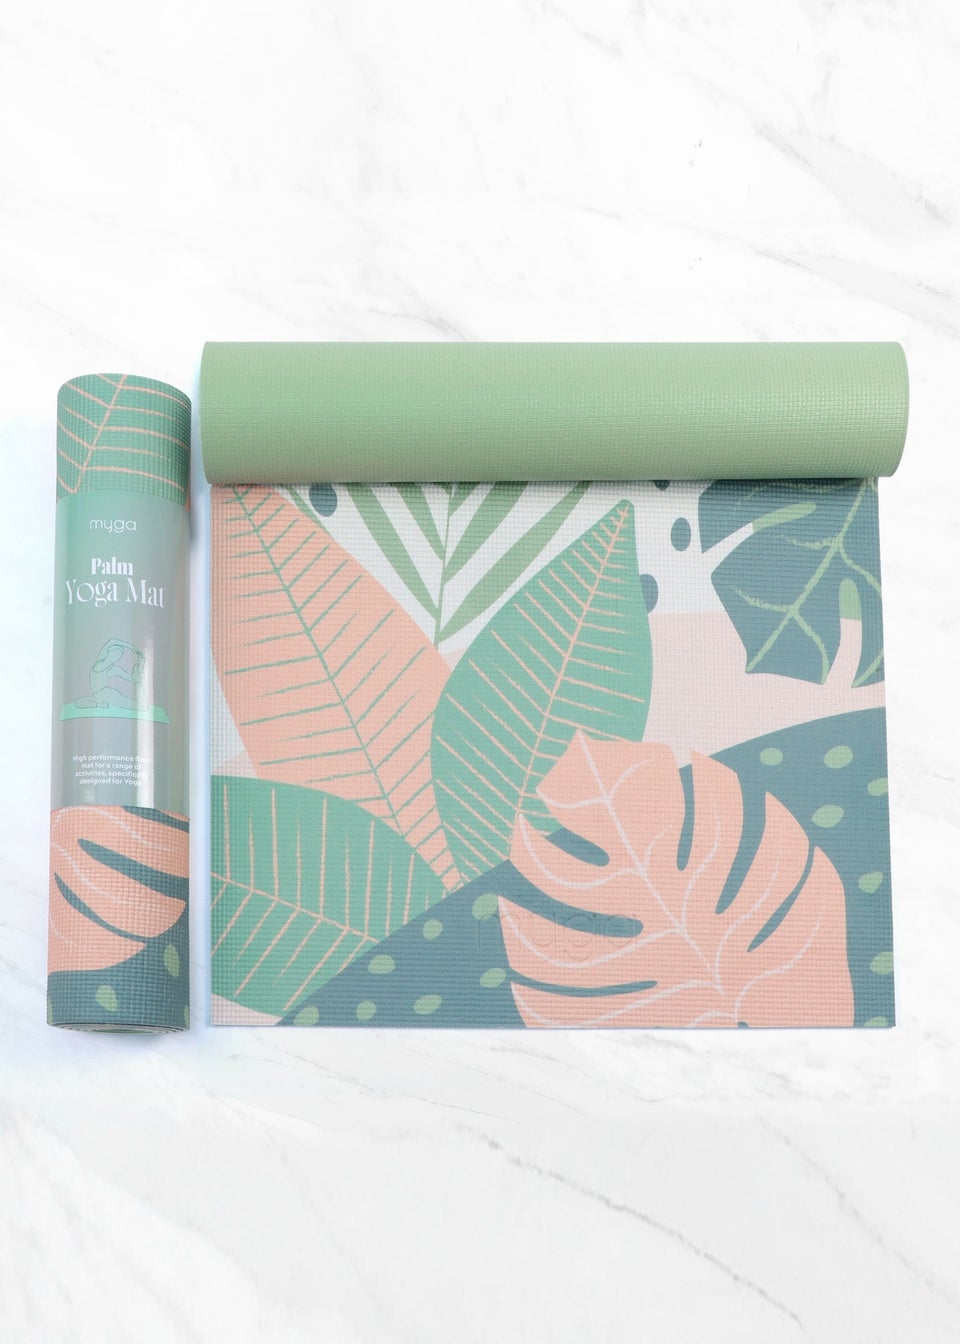 Myga Green Palm Yoga Mat